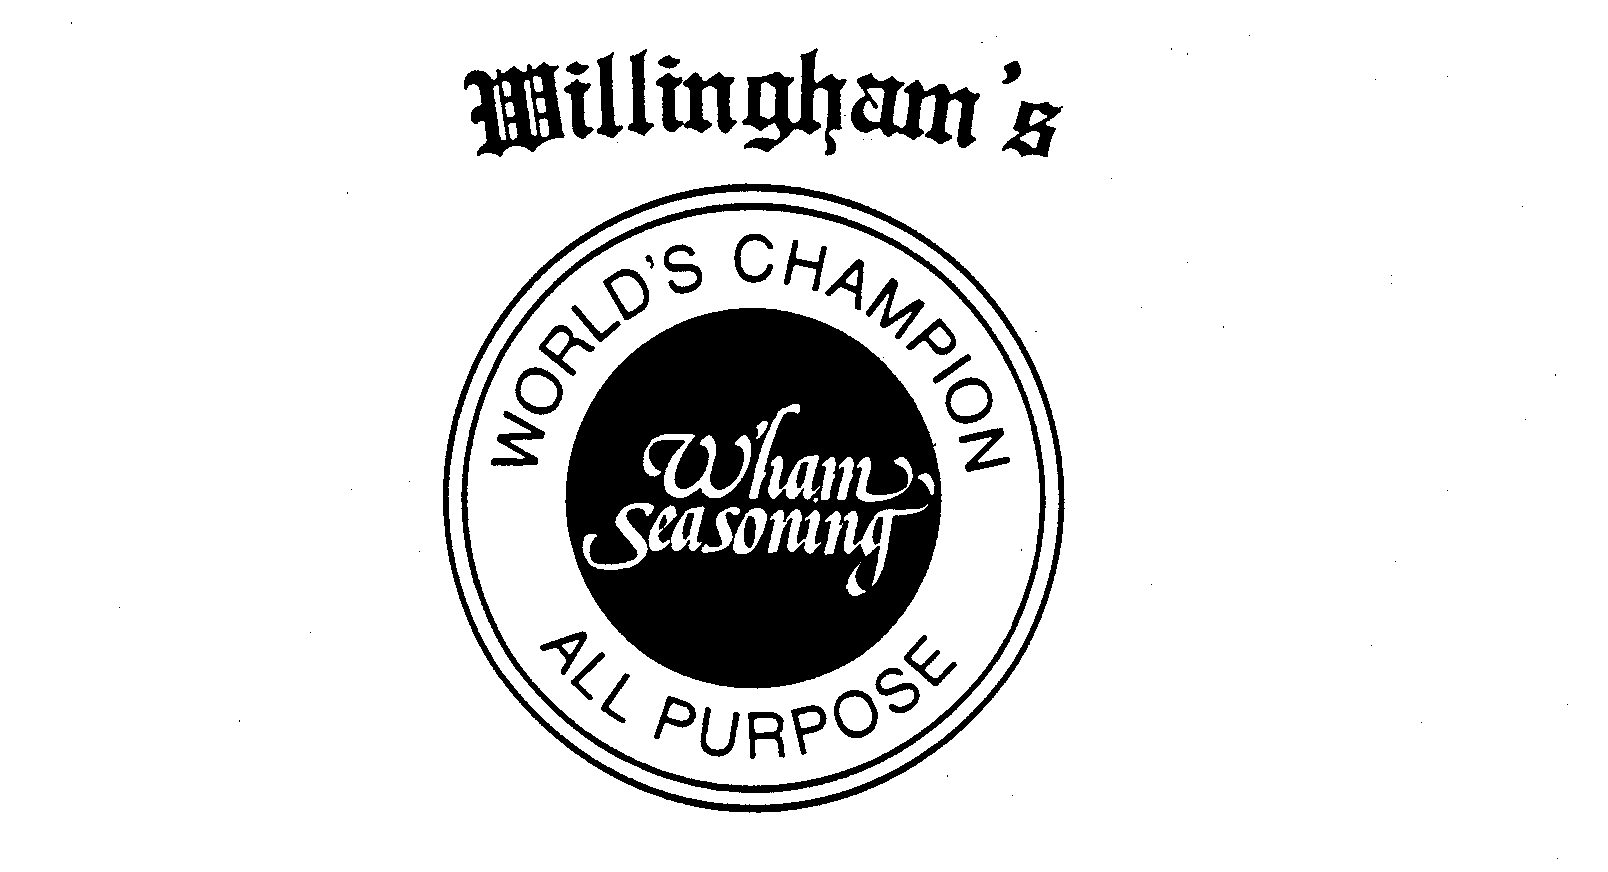  WILLINGHAM'S WHAM SEASONING WORLD'S CHAMPION ALL PURPOSE